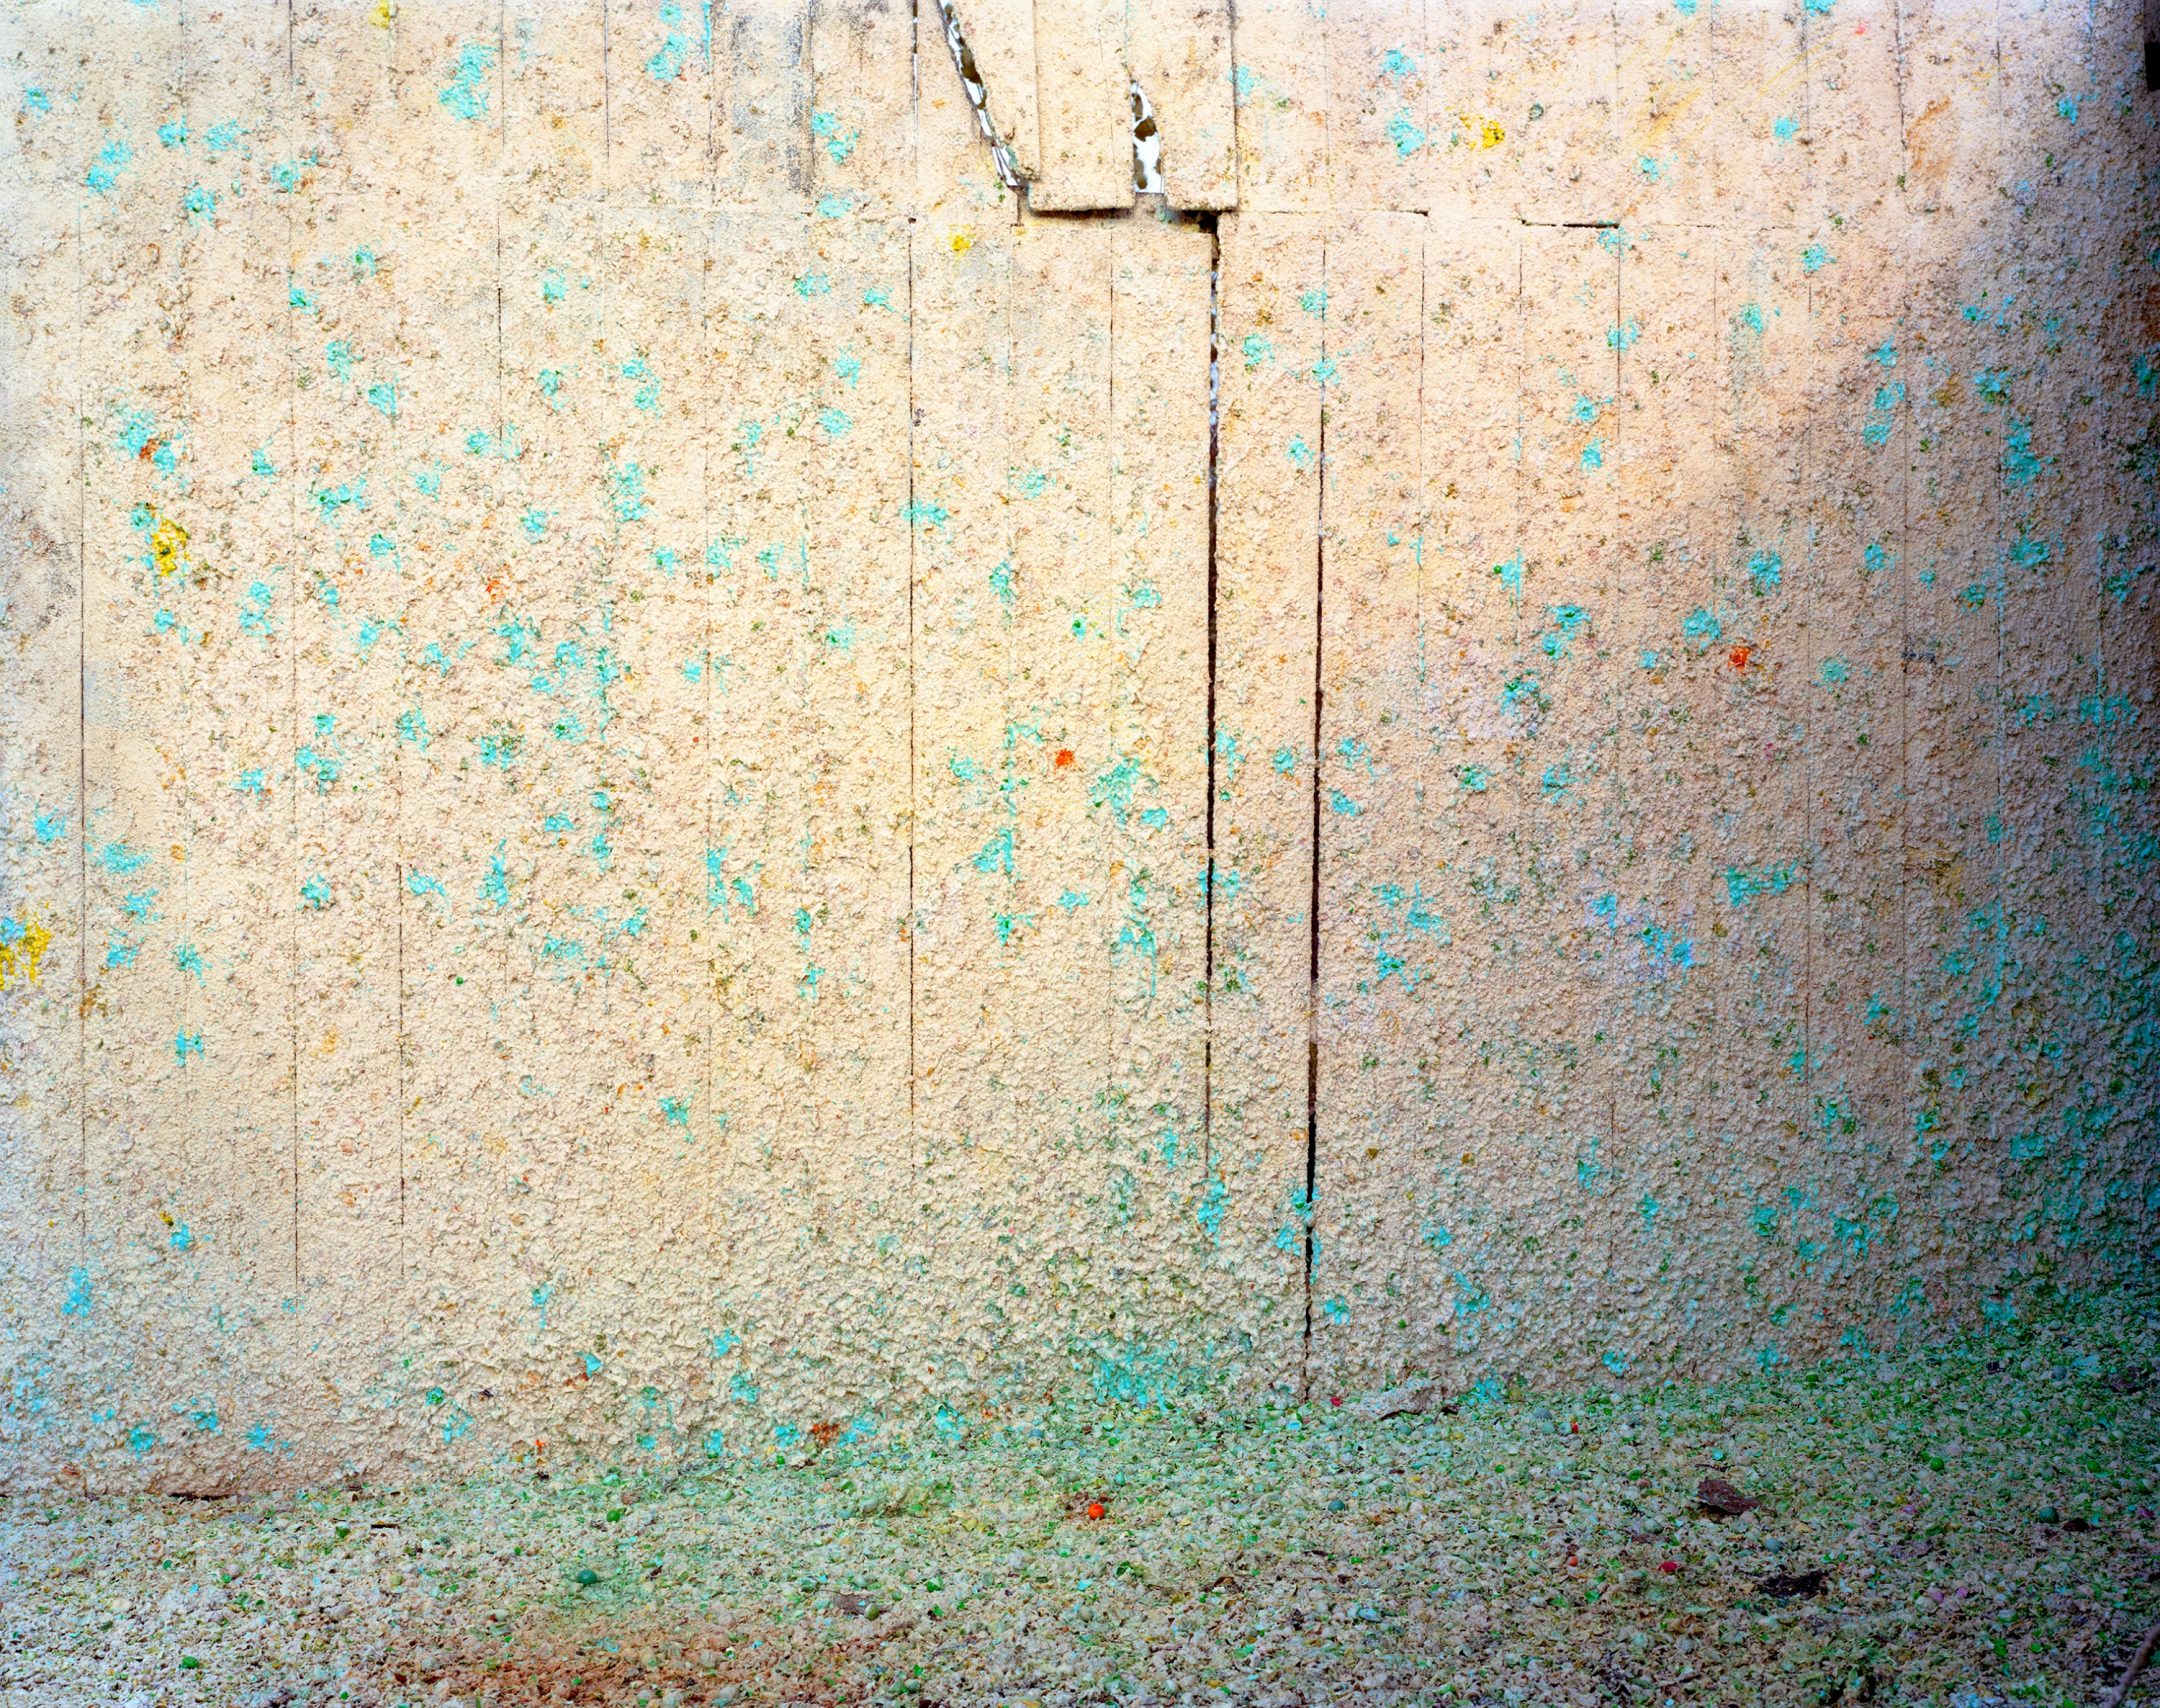 Paul D'Amato - Paintball Wall, 2019